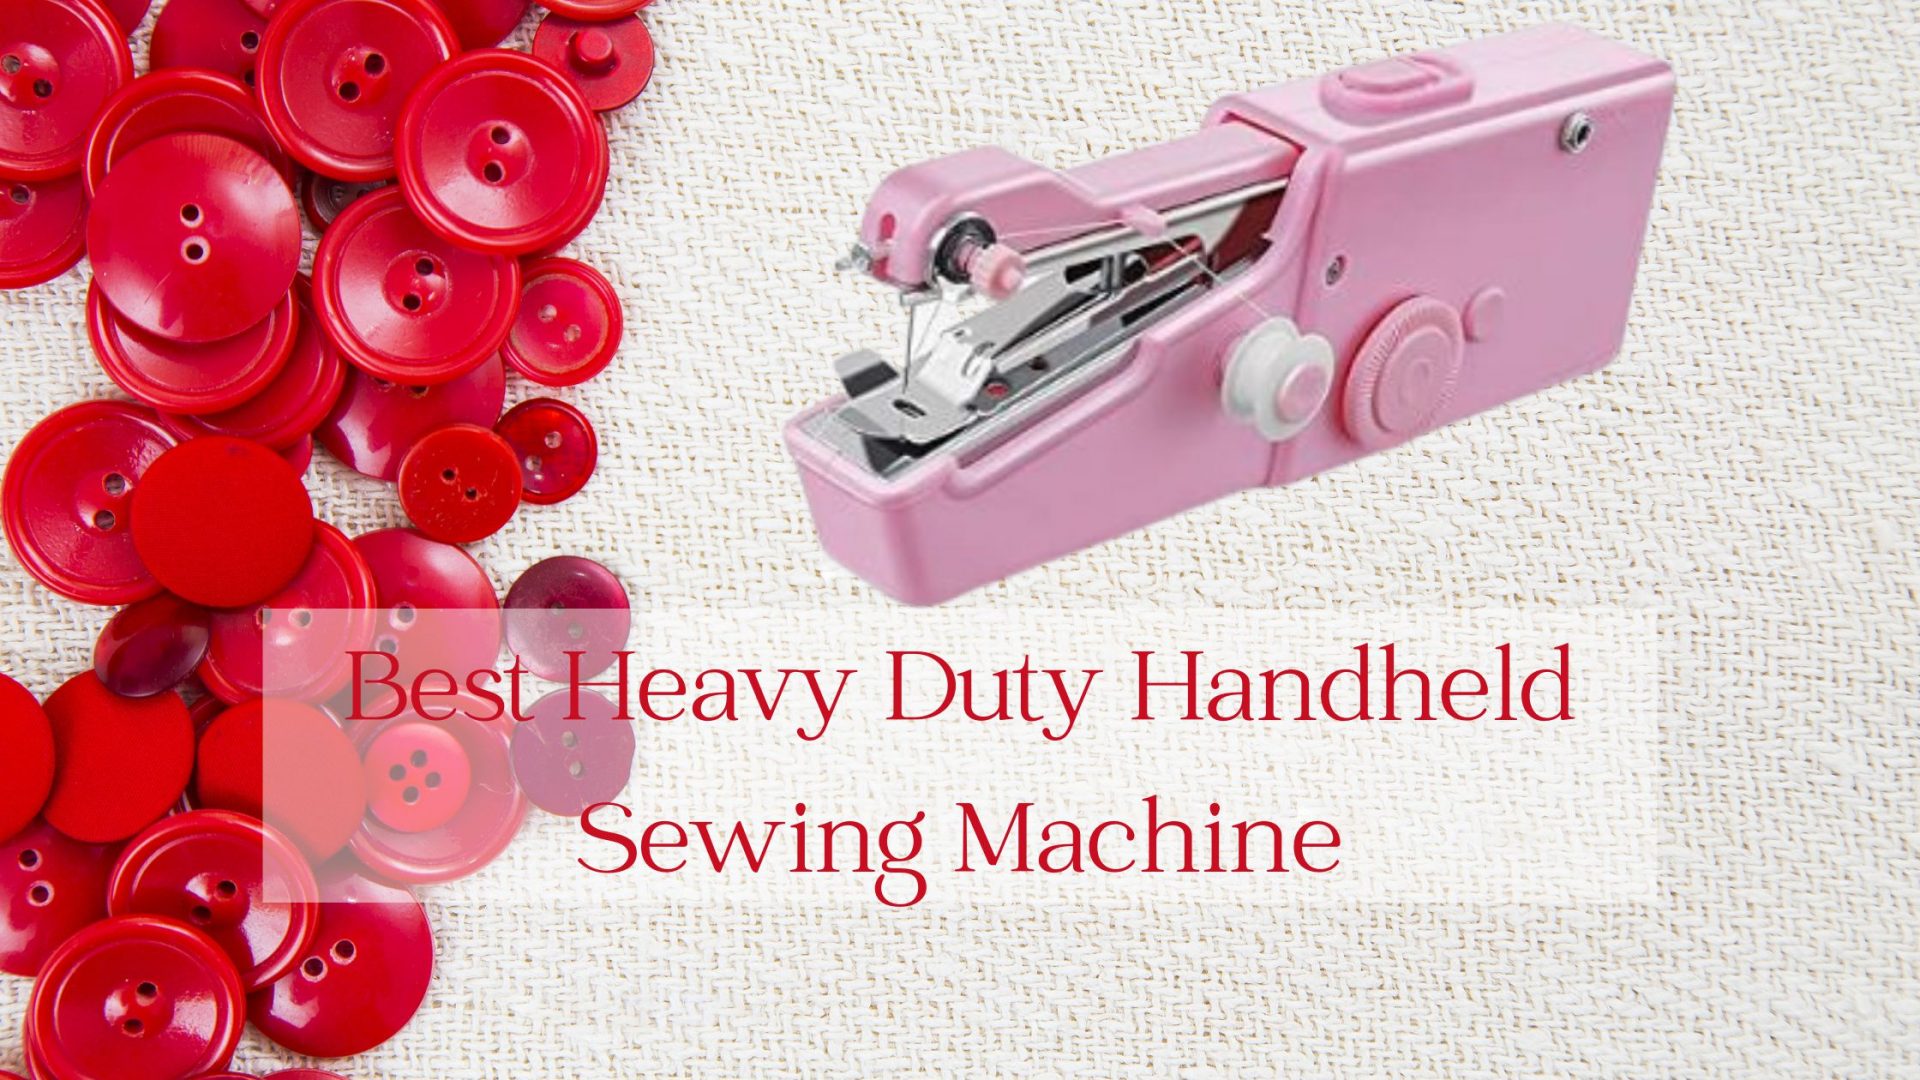 Best Heavy Duty Handheld Sewing Machine